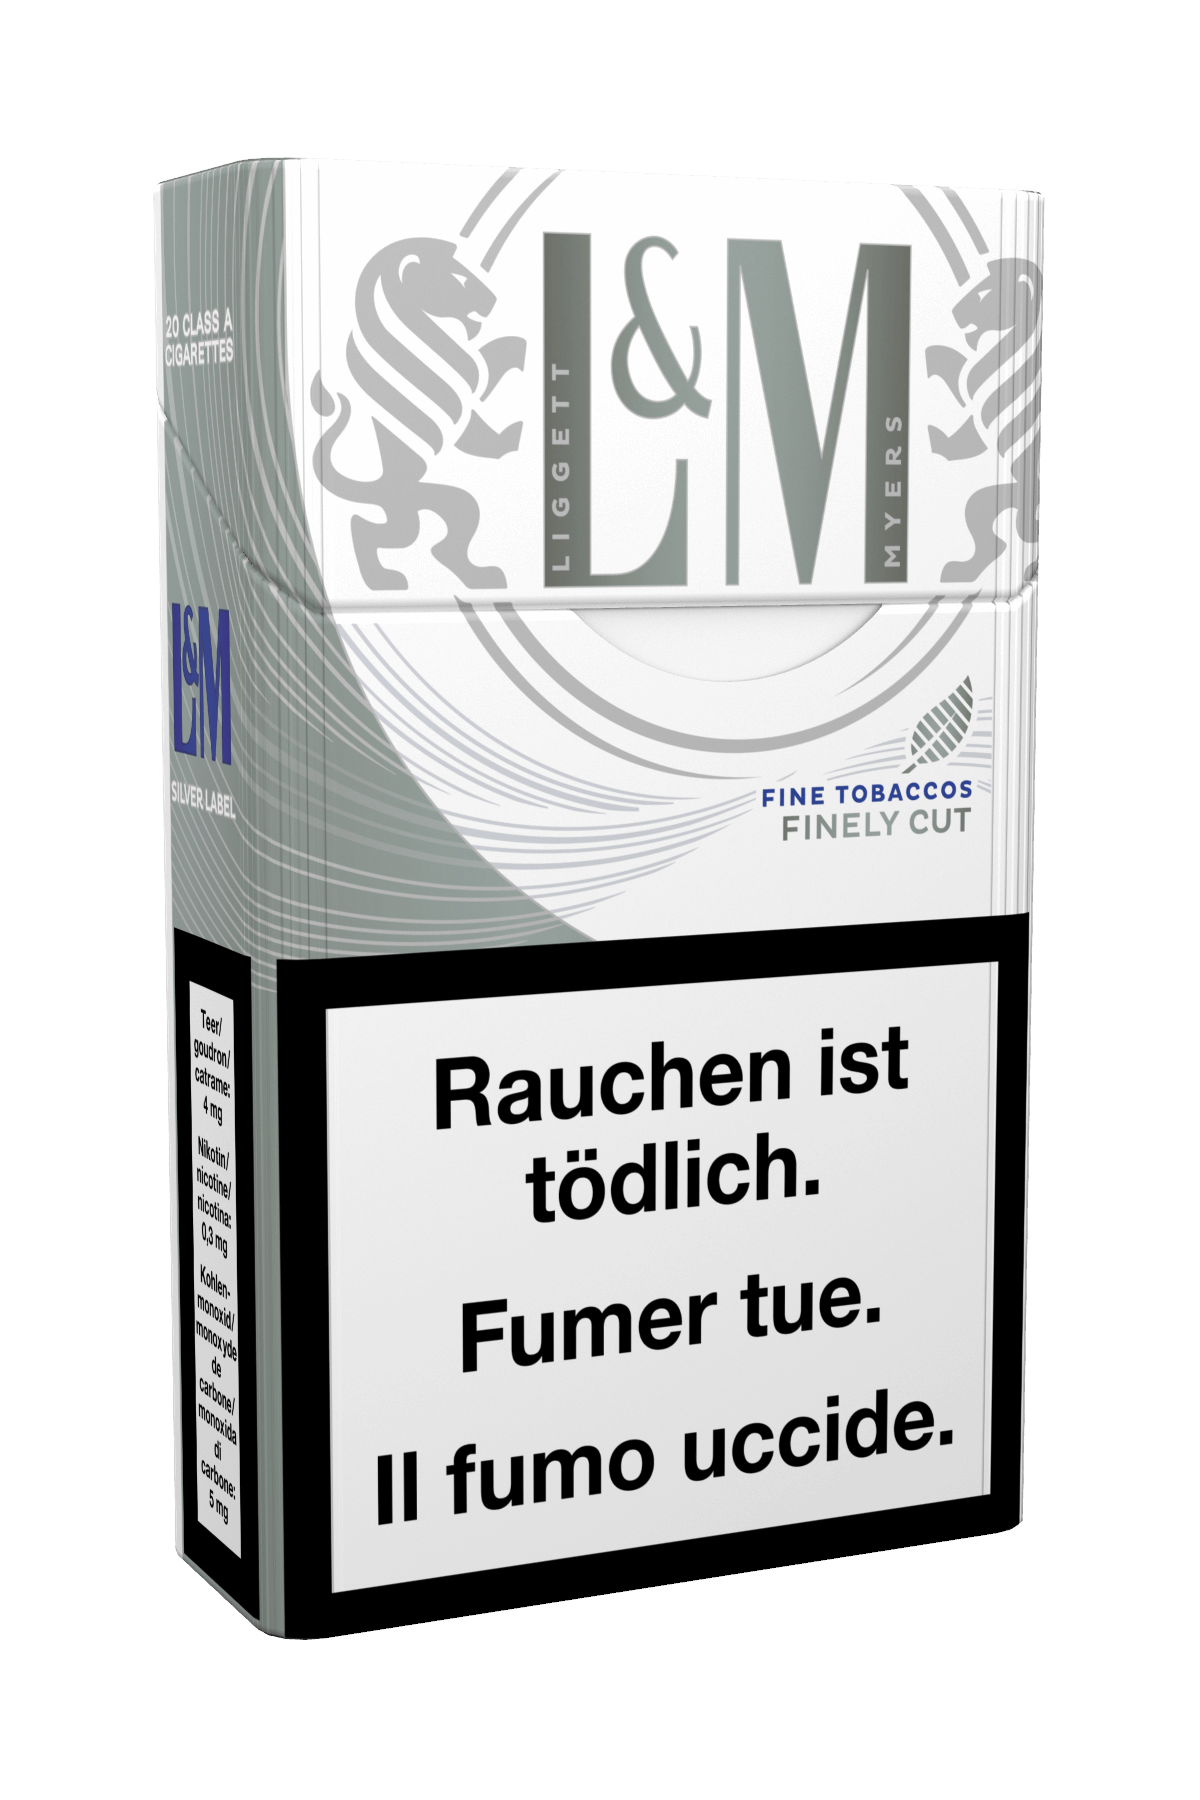 L&M Silver Label Box